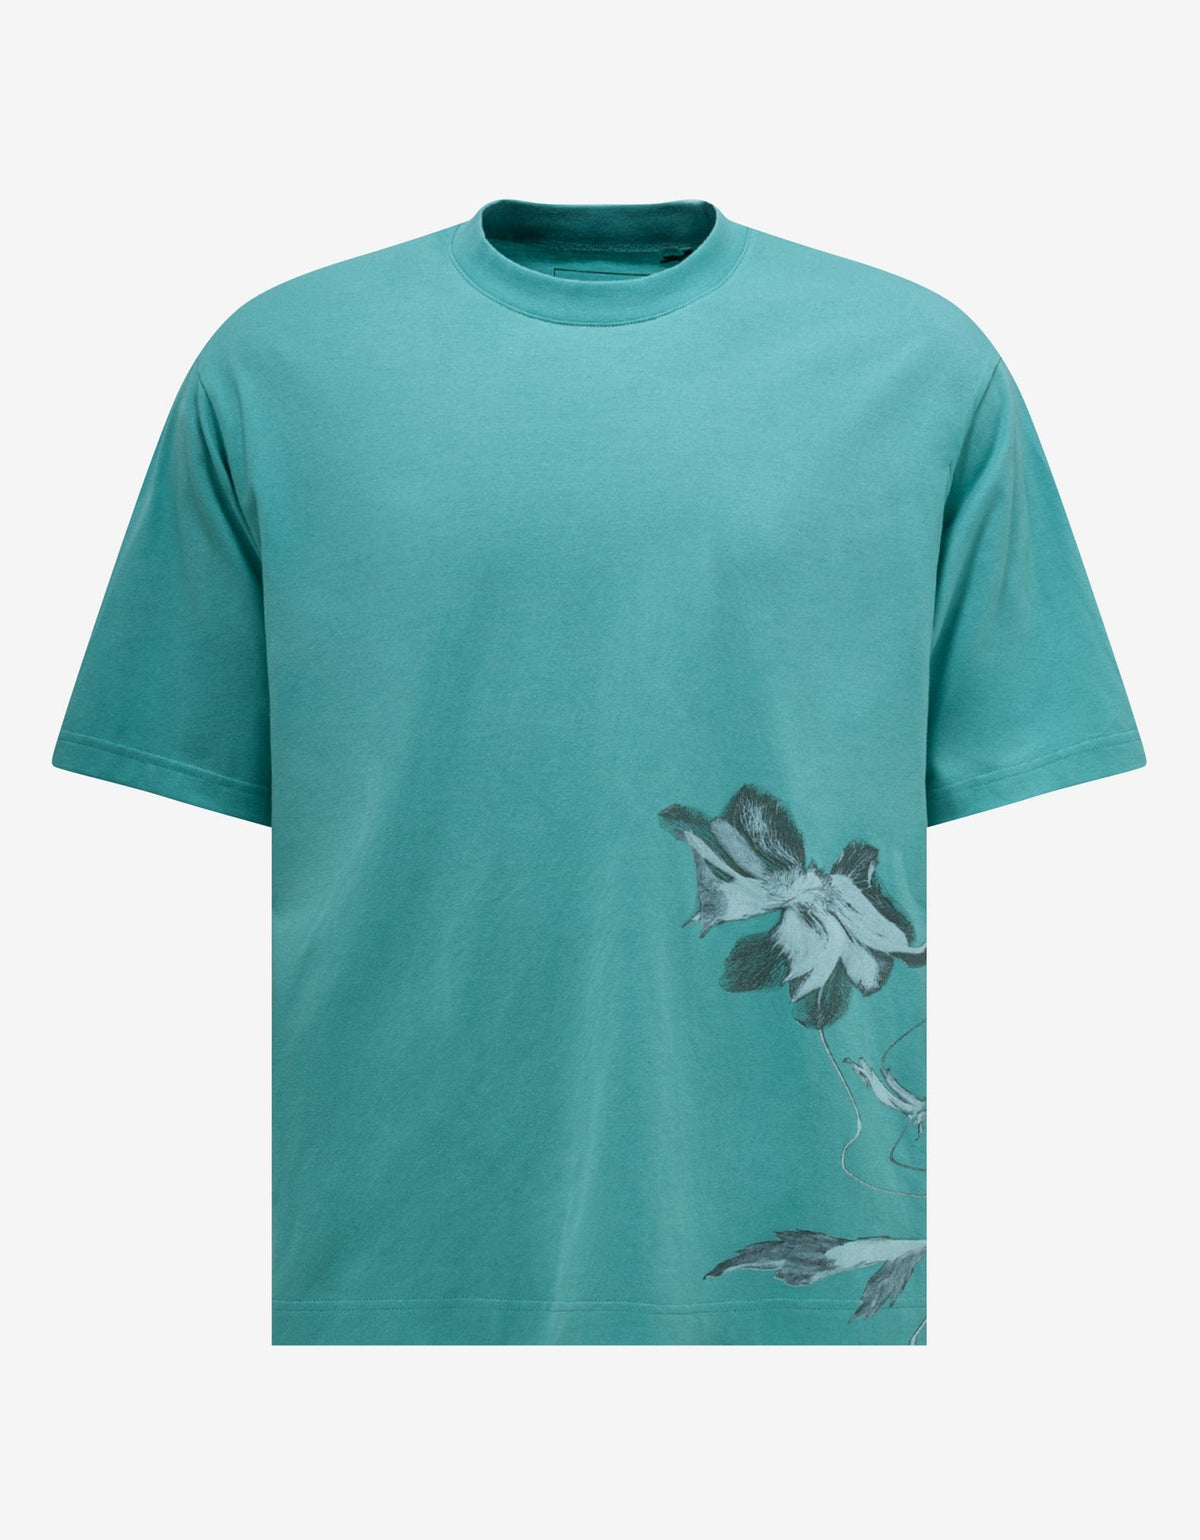 Y-3 Blue Floral Print T-Shirt